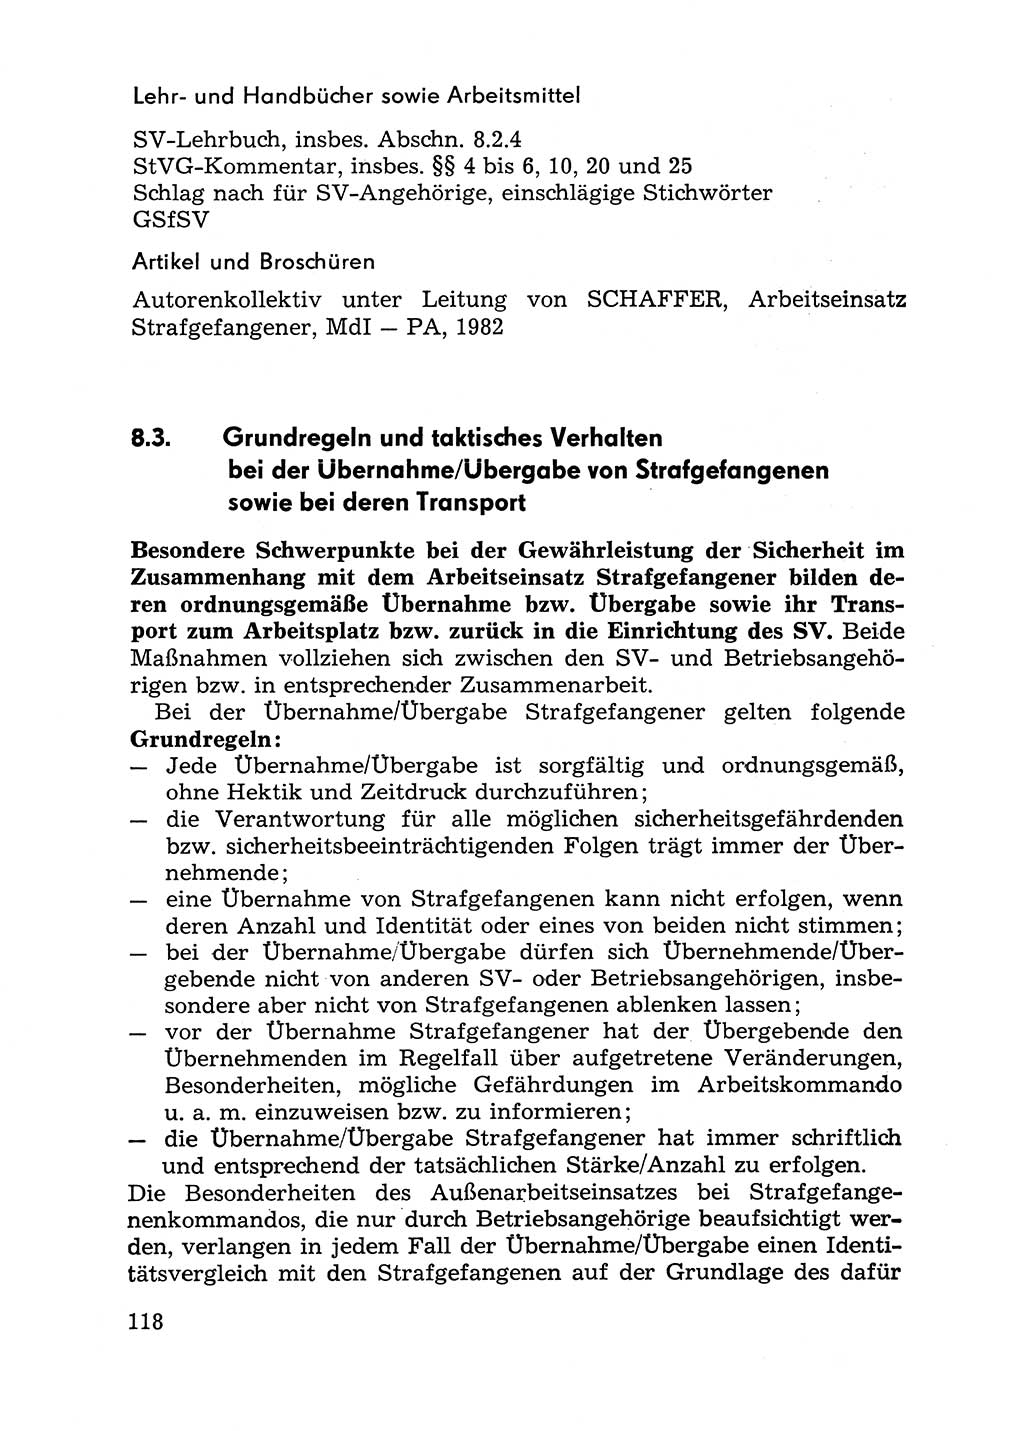 Handbuch für Betriebsangehörige, Abteilung Strafvollzug (SV) [Ministerium des Innern (MdI) Deutsche Demokratische Republik (DDR)] 1981, Seite 118 (Hb. BA Abt. SV MdI DDR 1981, S. 118)